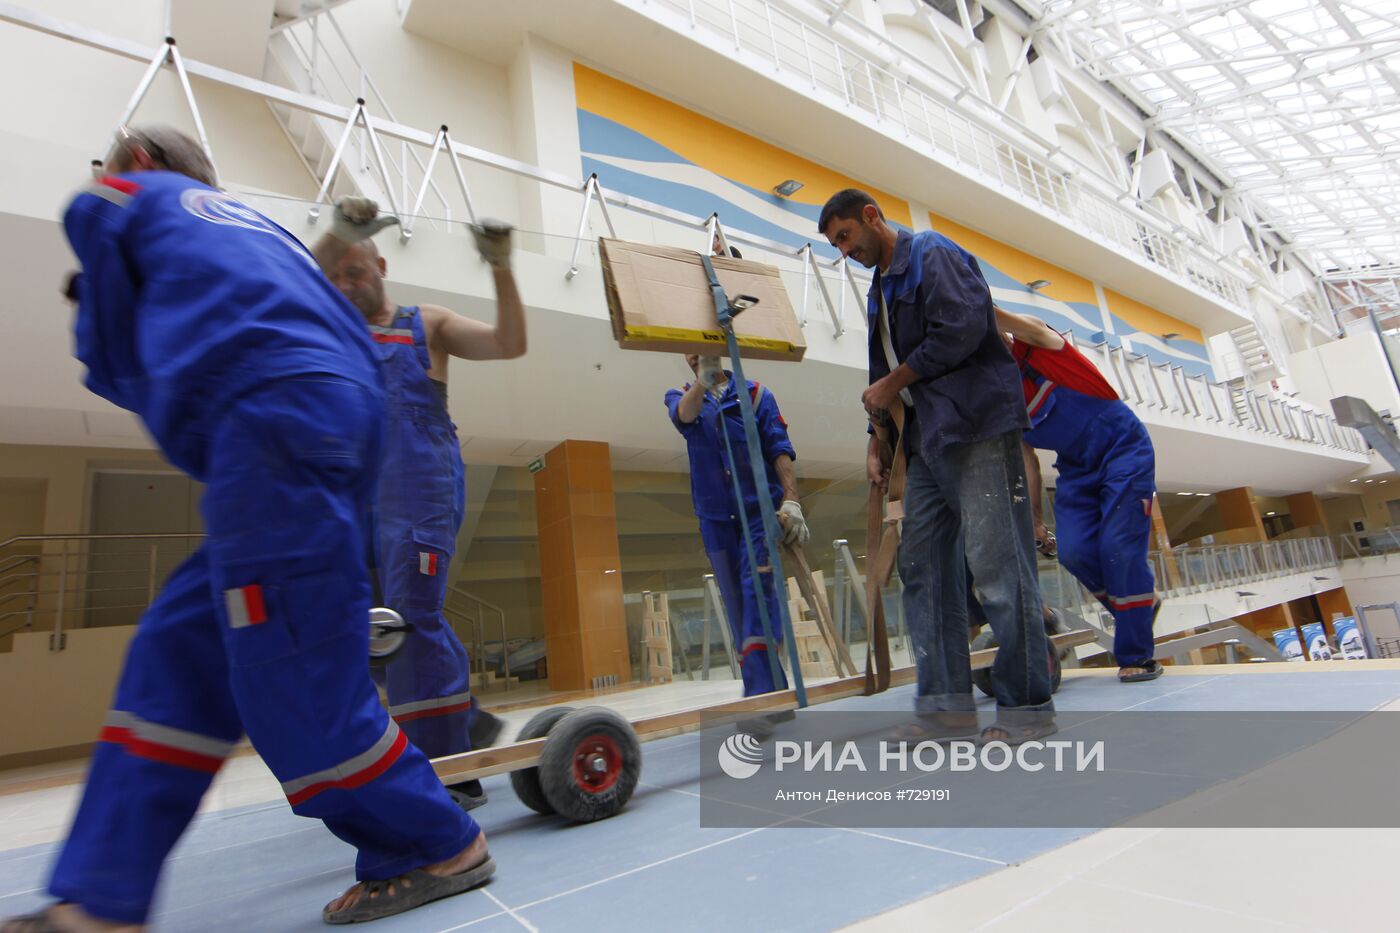 Подготовка к открытию спортивного комплекса "Янтарь" в Строгино